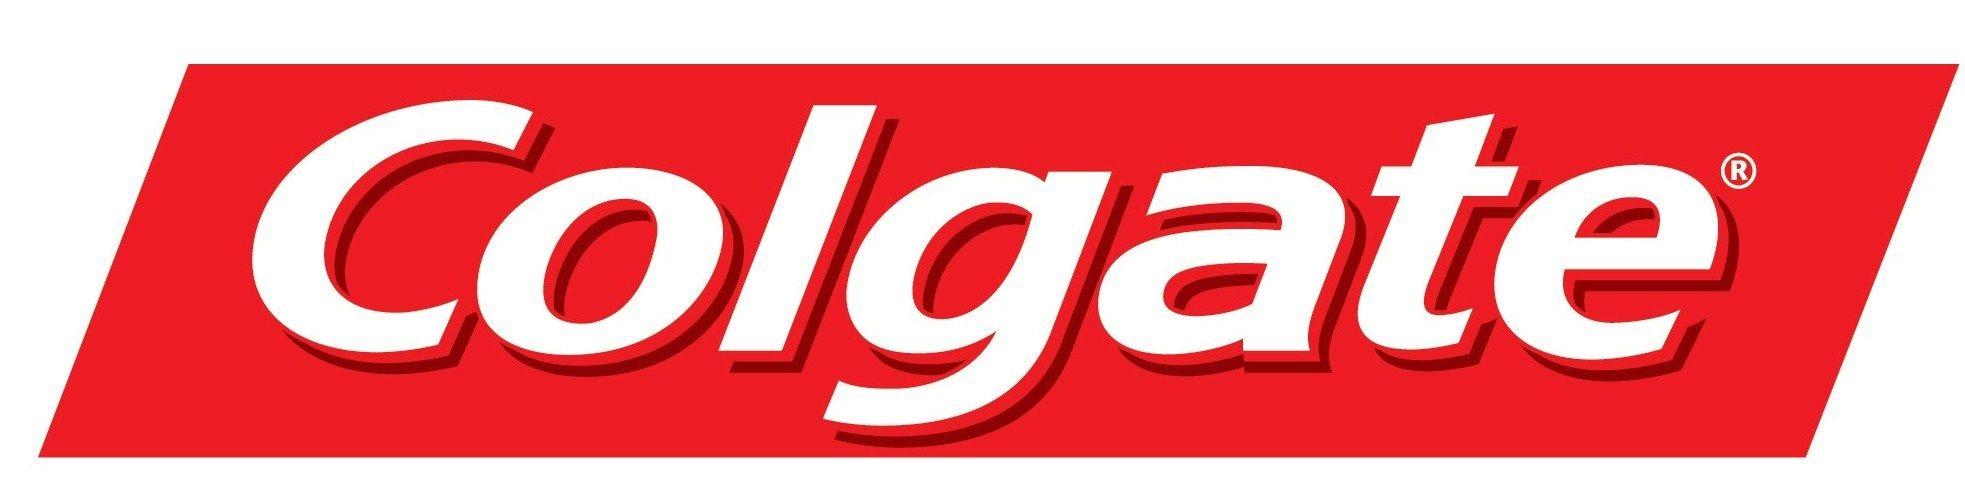 Colgate Logo - Pin by danyal majiet on logos | Logos, Famous logos, Logo design